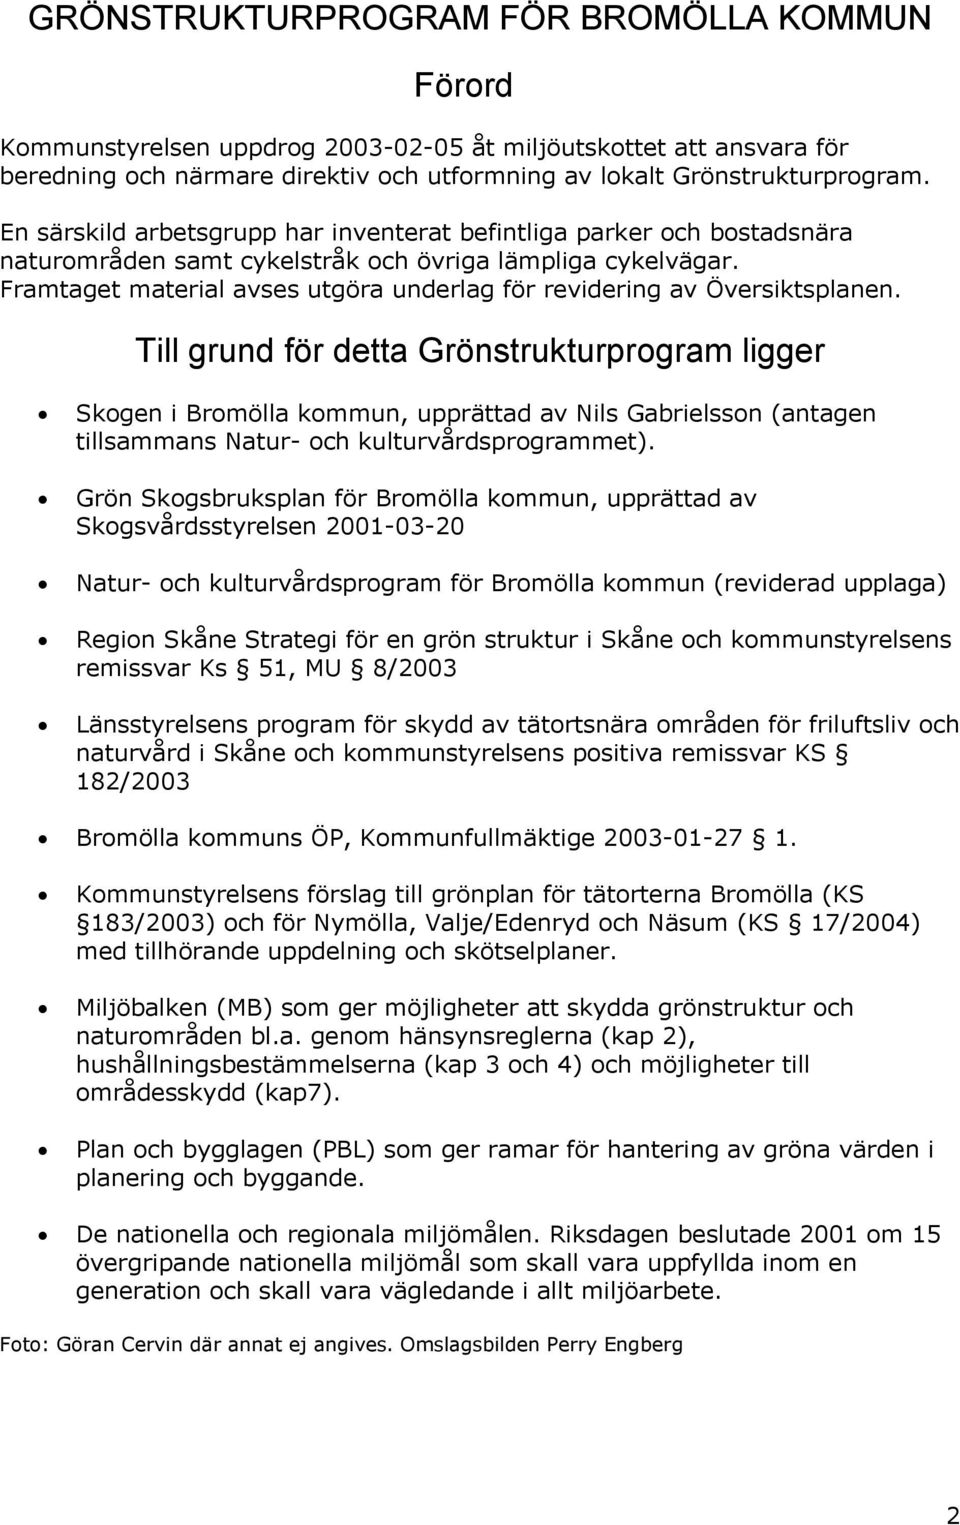 Till grud för detta Gröstrukturprogram ligger Skoge i Bromölla kommu, upprättad av Nils Gabrielsso (atage tillsammas Natur- och kulturvårdsprogrammet).